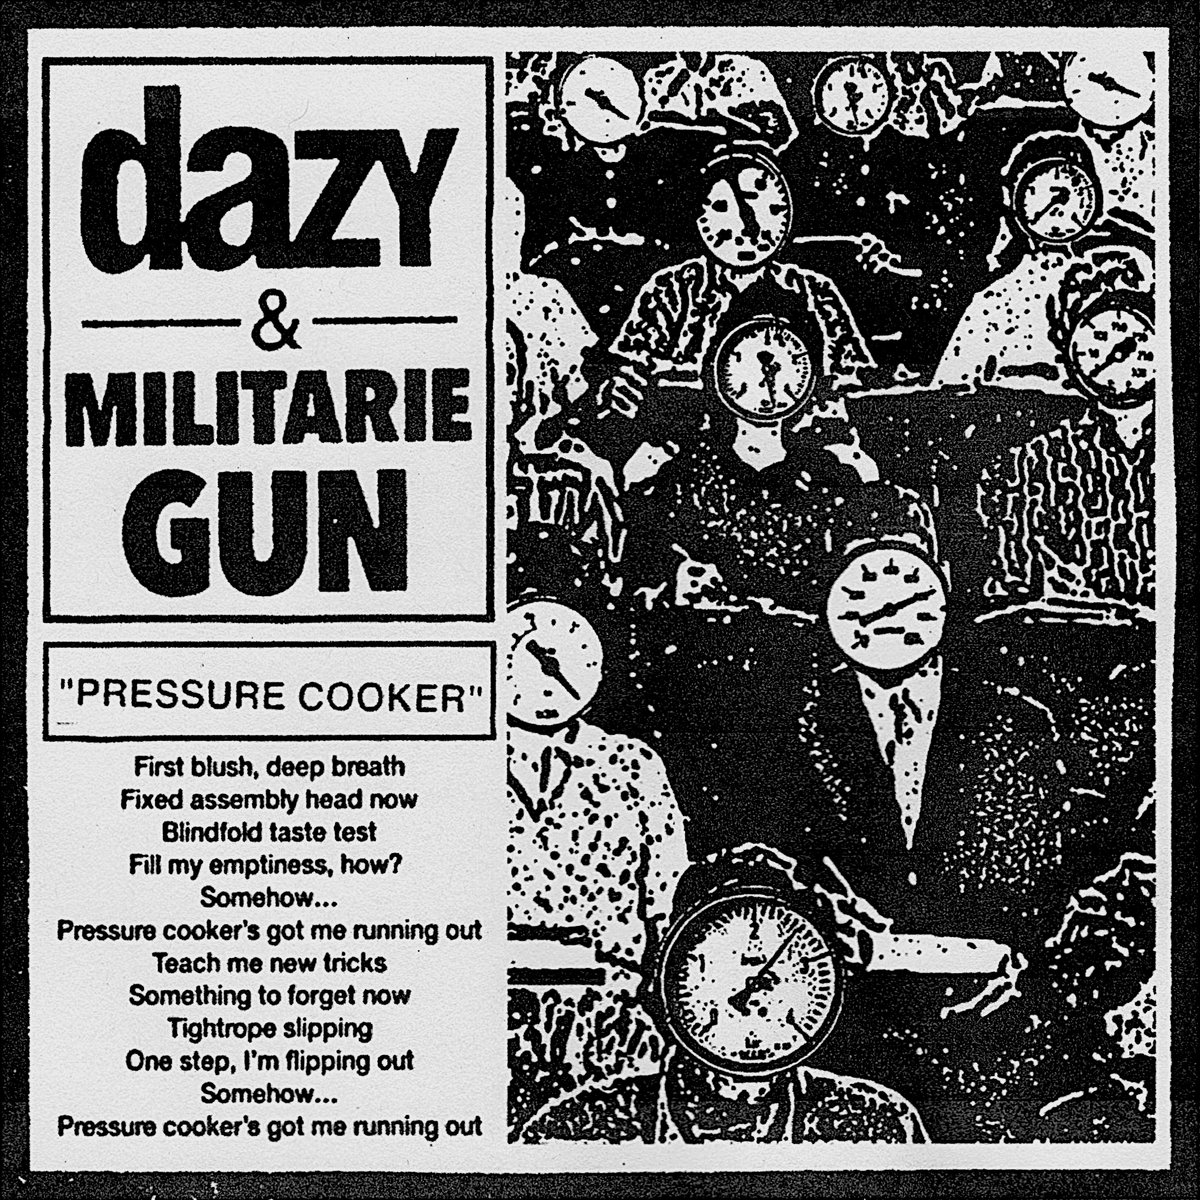 Dazy & Militarie Gun — Pressure Cooker cover artwork